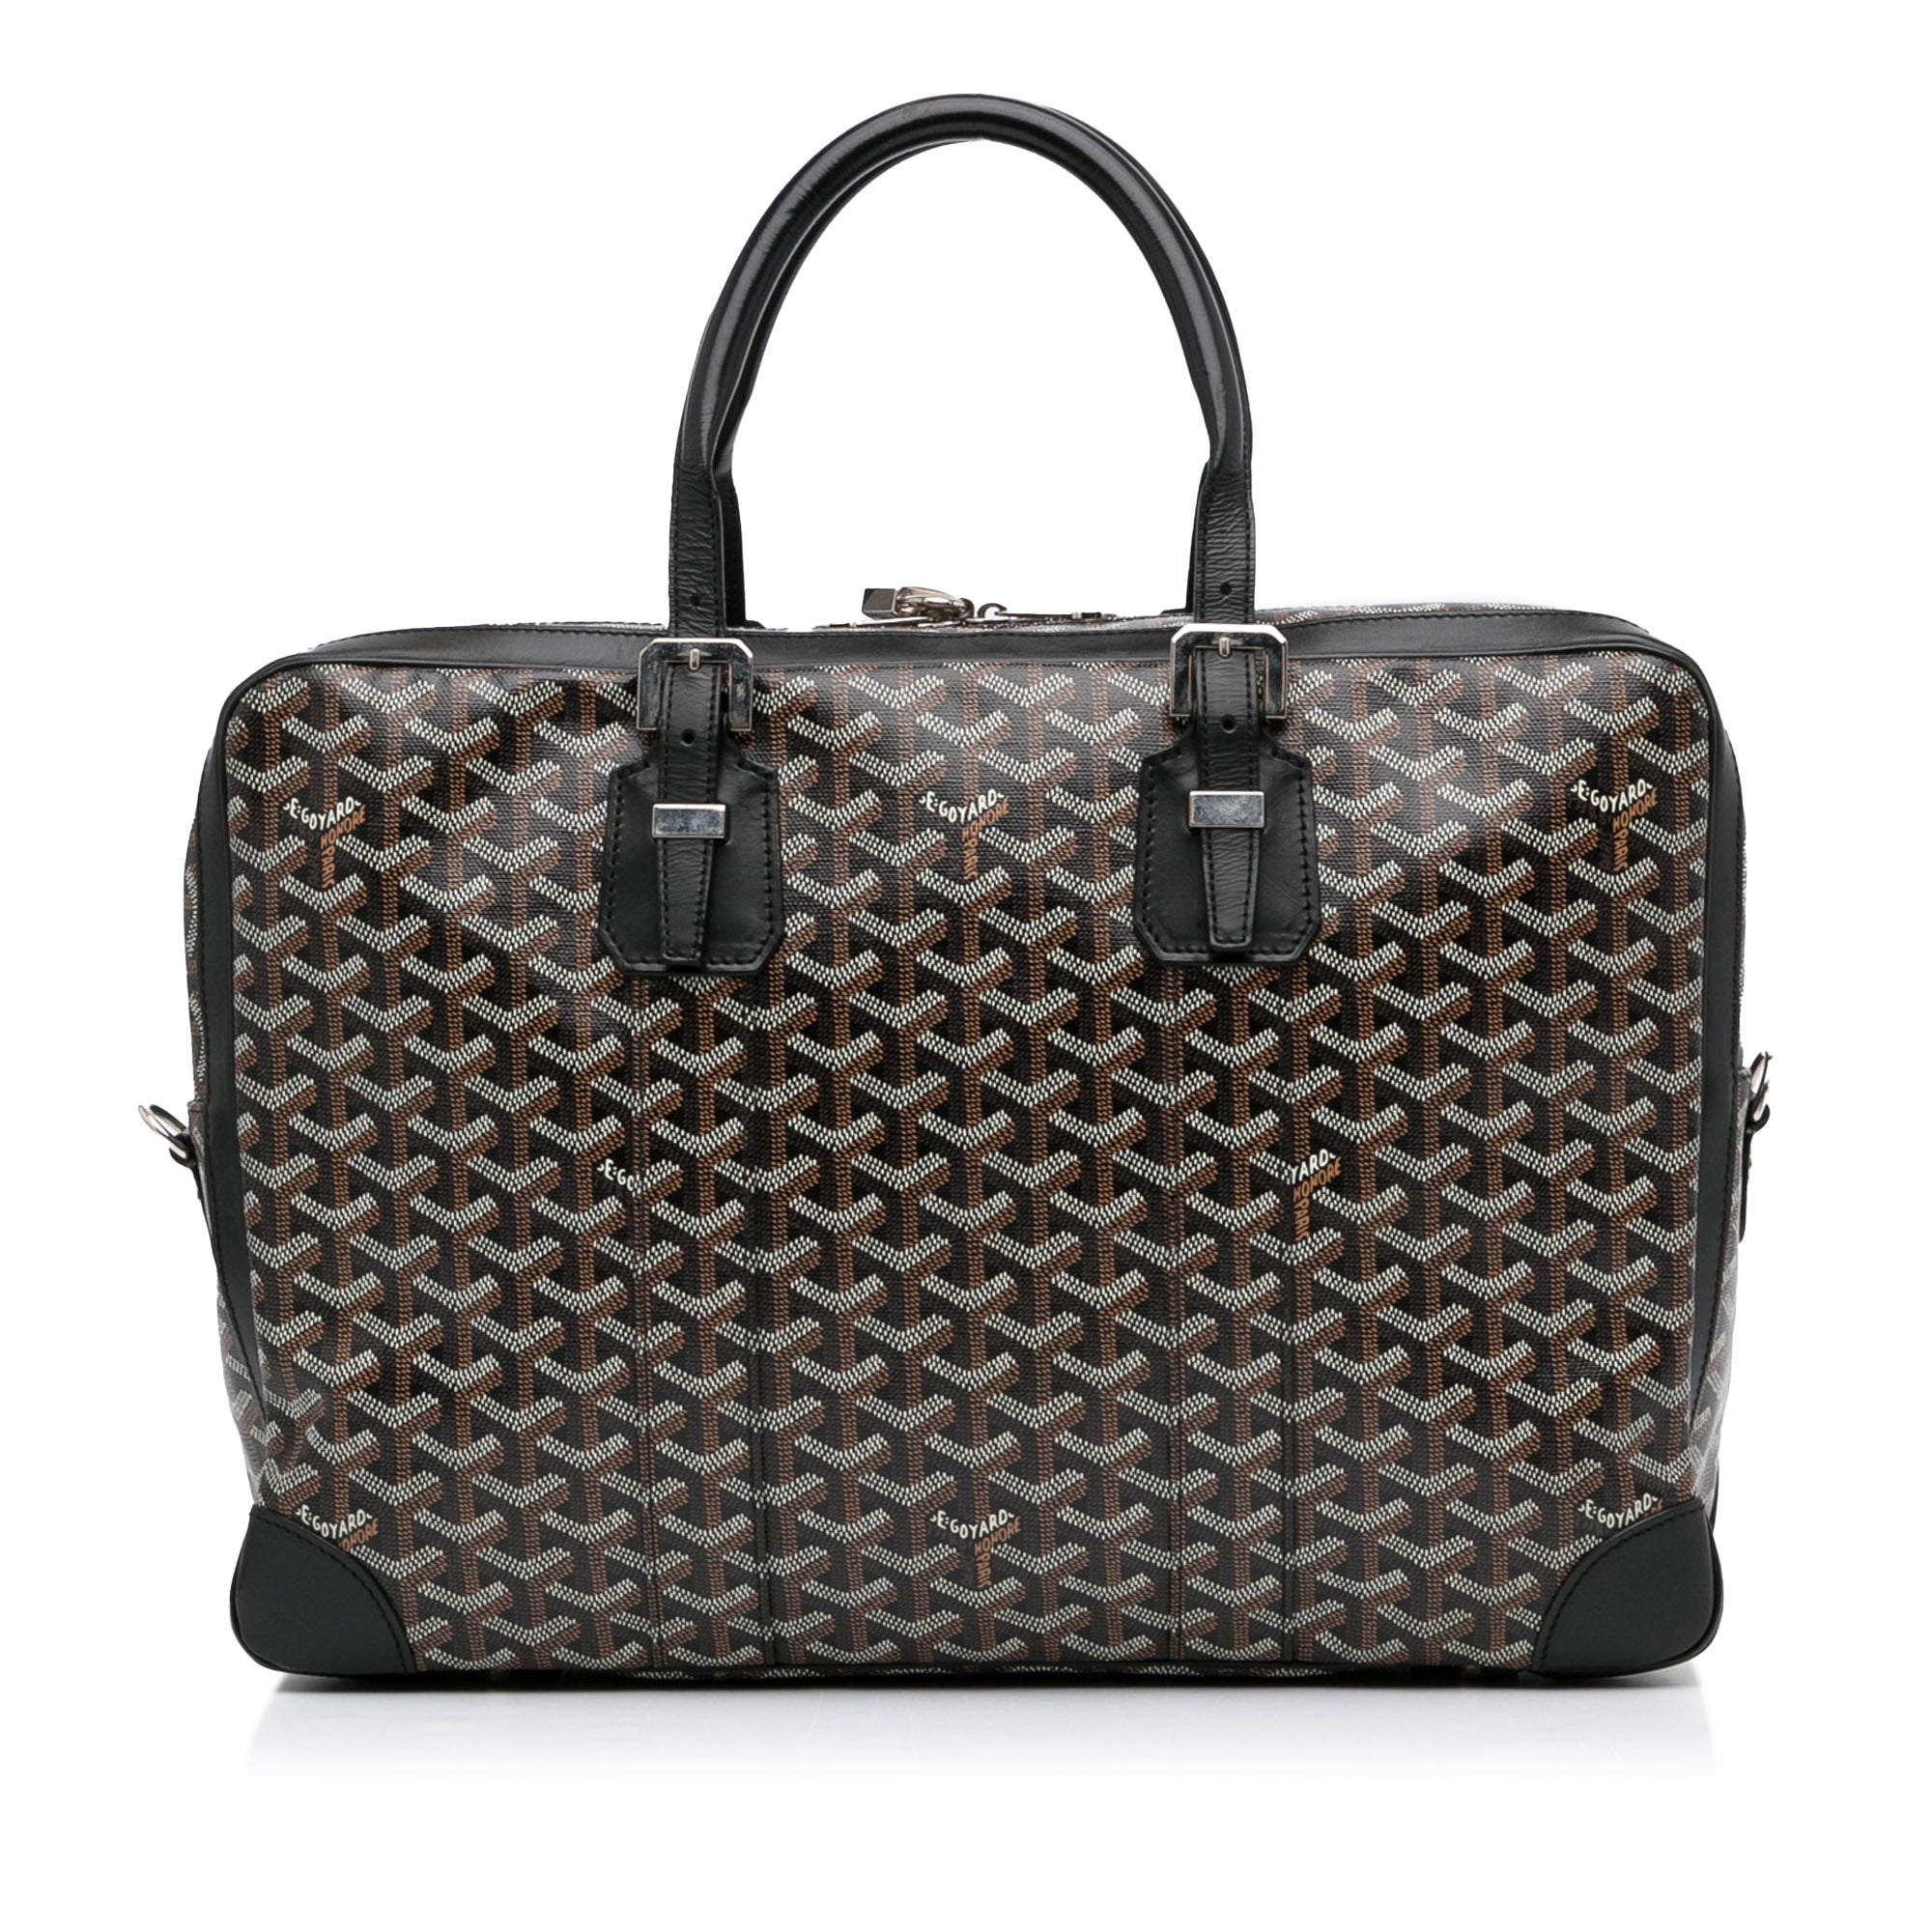 Goyard, Bags, Goyard Trolly Pm Rolling Suitcase